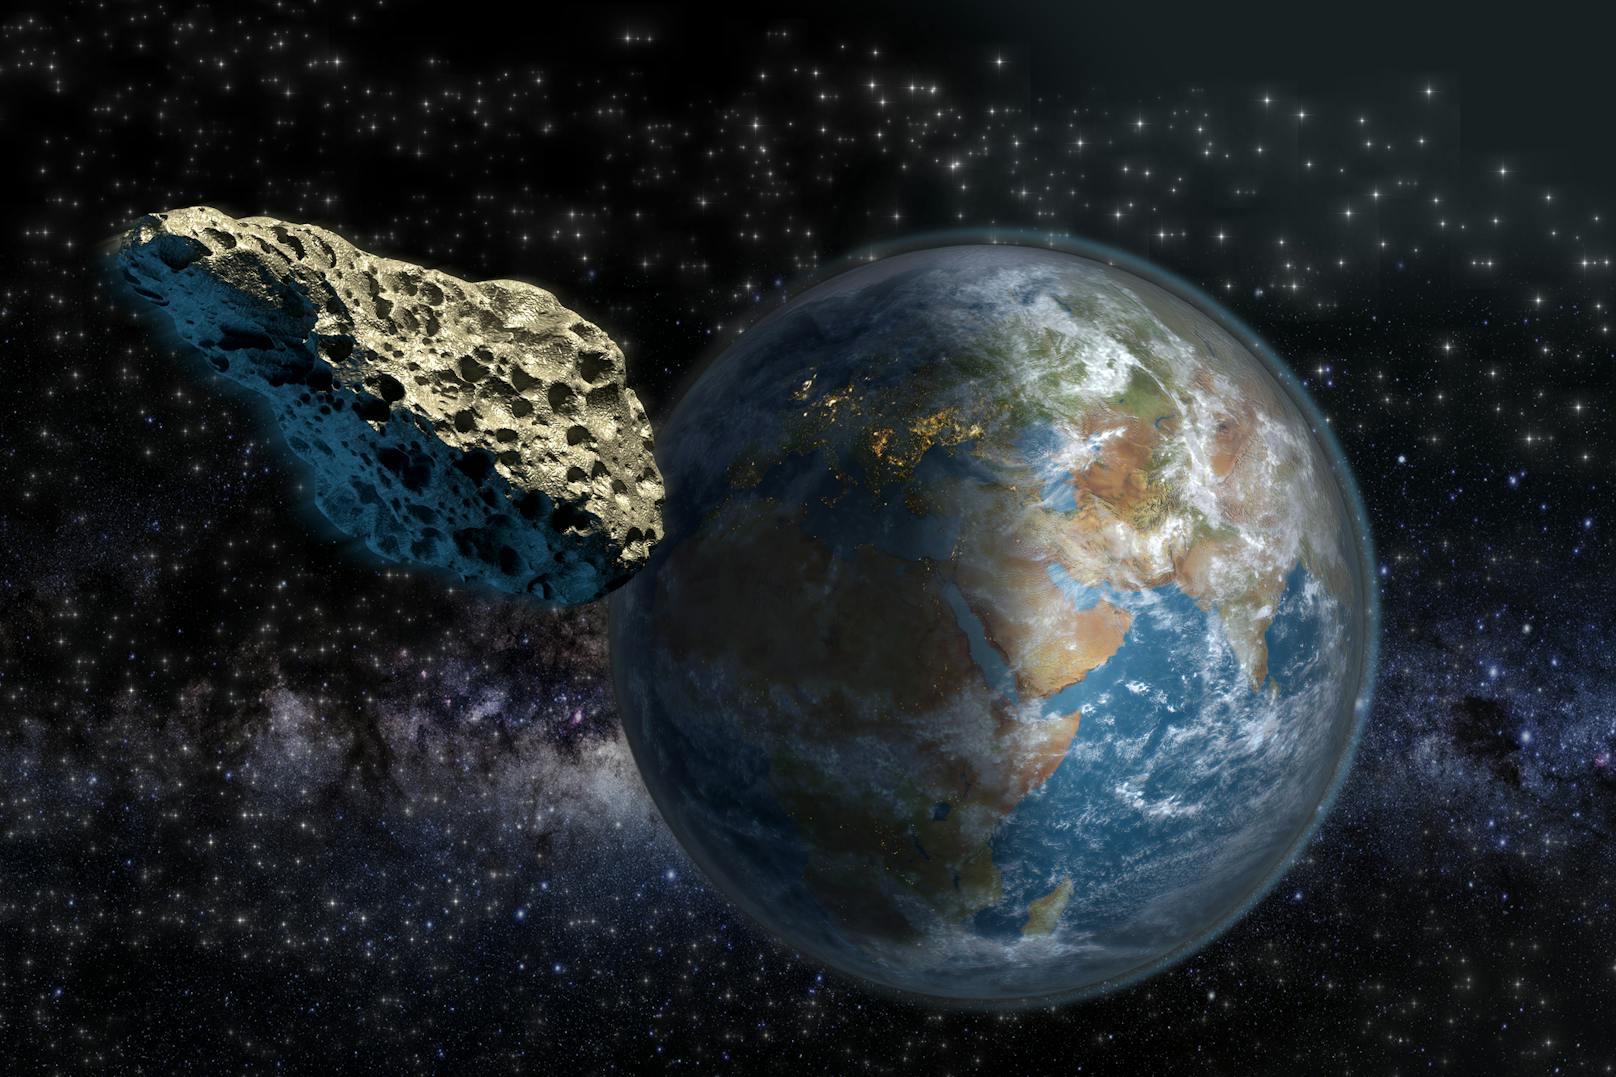 Wiener in Angst: Sorgt Riesen-Asteroid für Blackout?